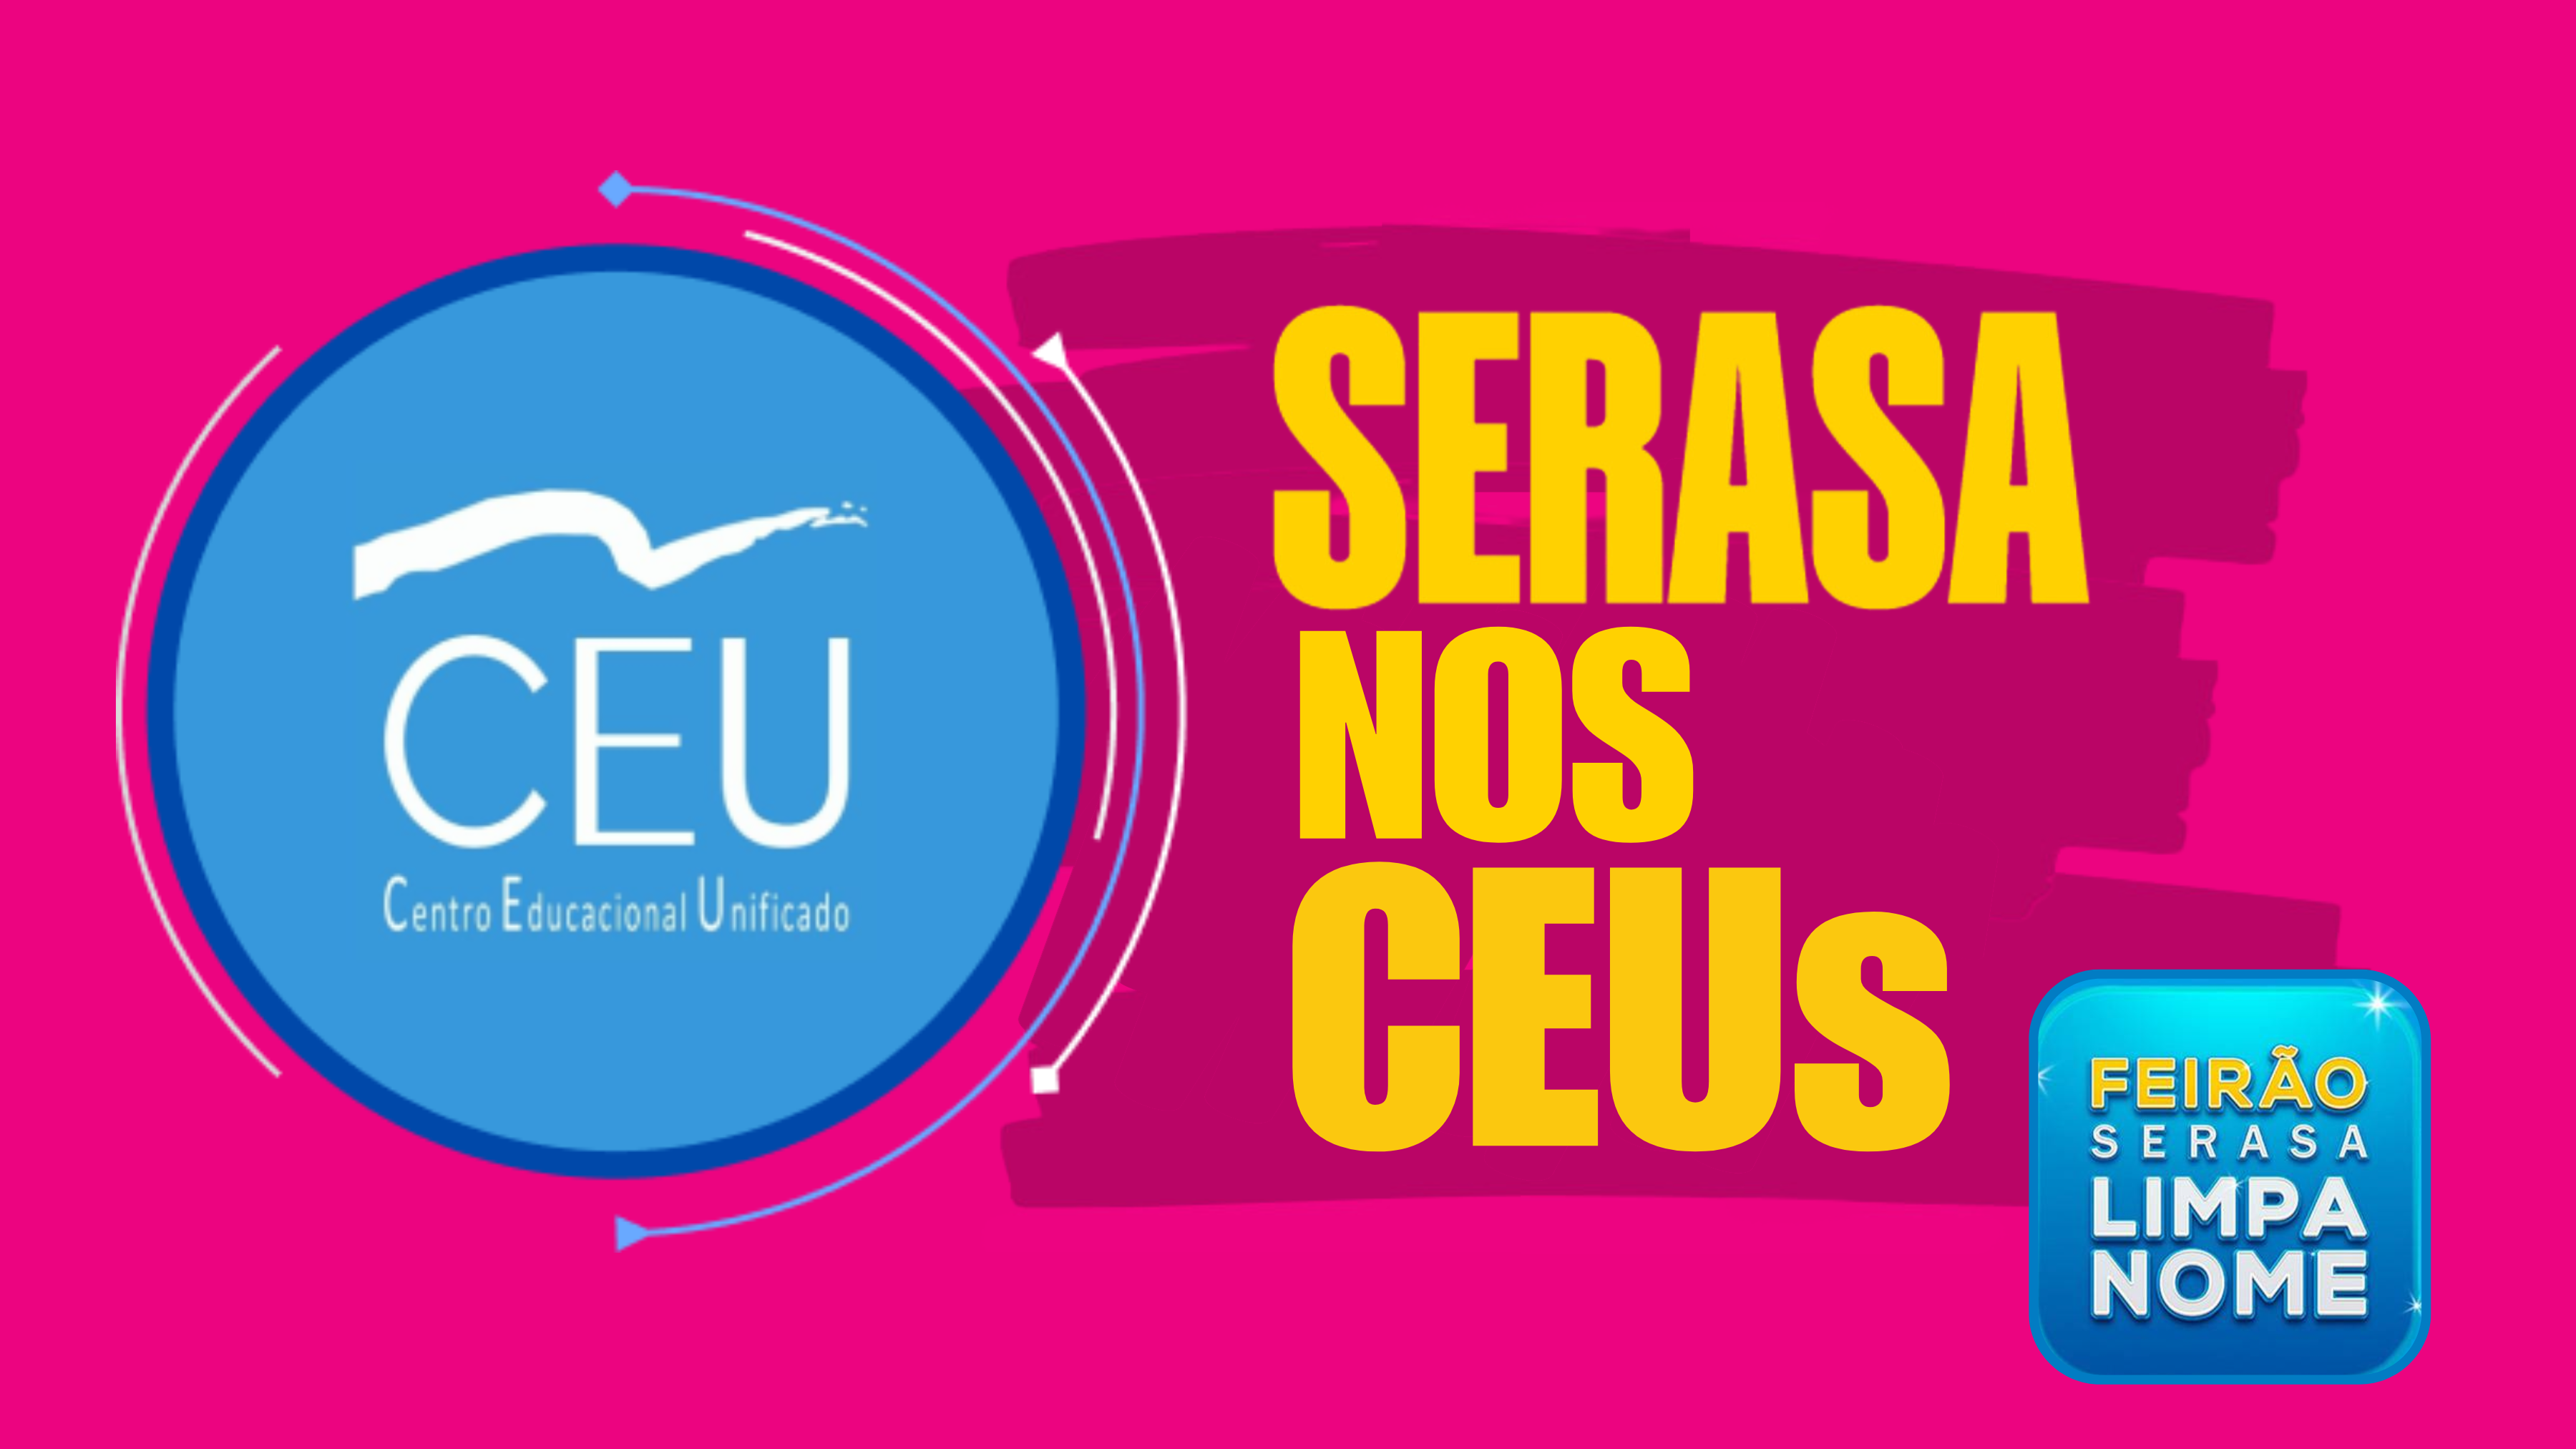 Imagem com fundo rosa com a logomarca dos CEUs e o texto Serasa nos CEUs.